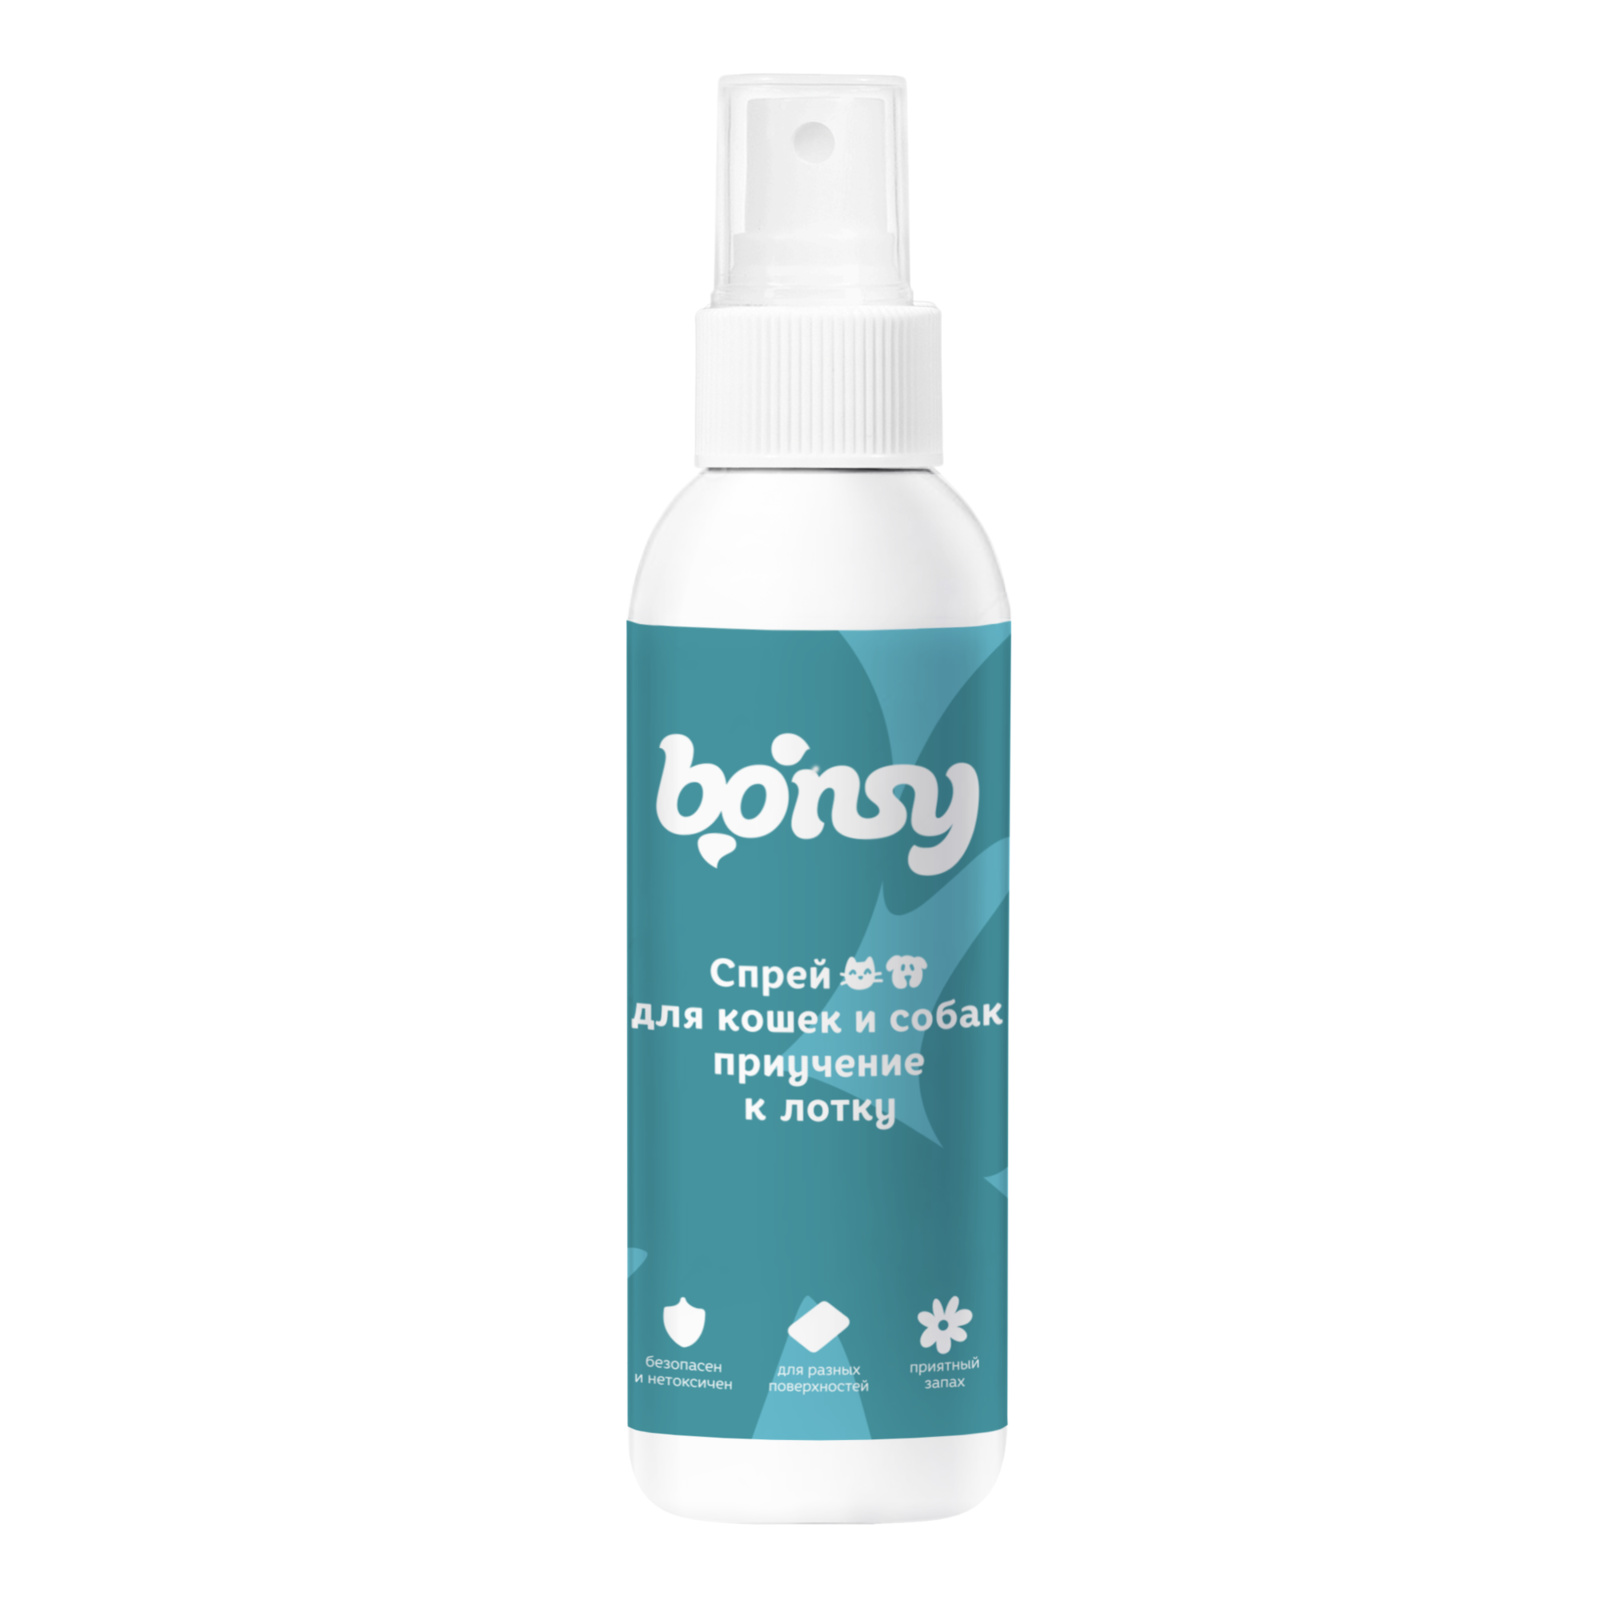 Bonsy Bonsy спрей «Приучение к лотку» для кошек и собак (150 г) bonsy bonsy гель для рук с антибактериальным эффектом 150 г